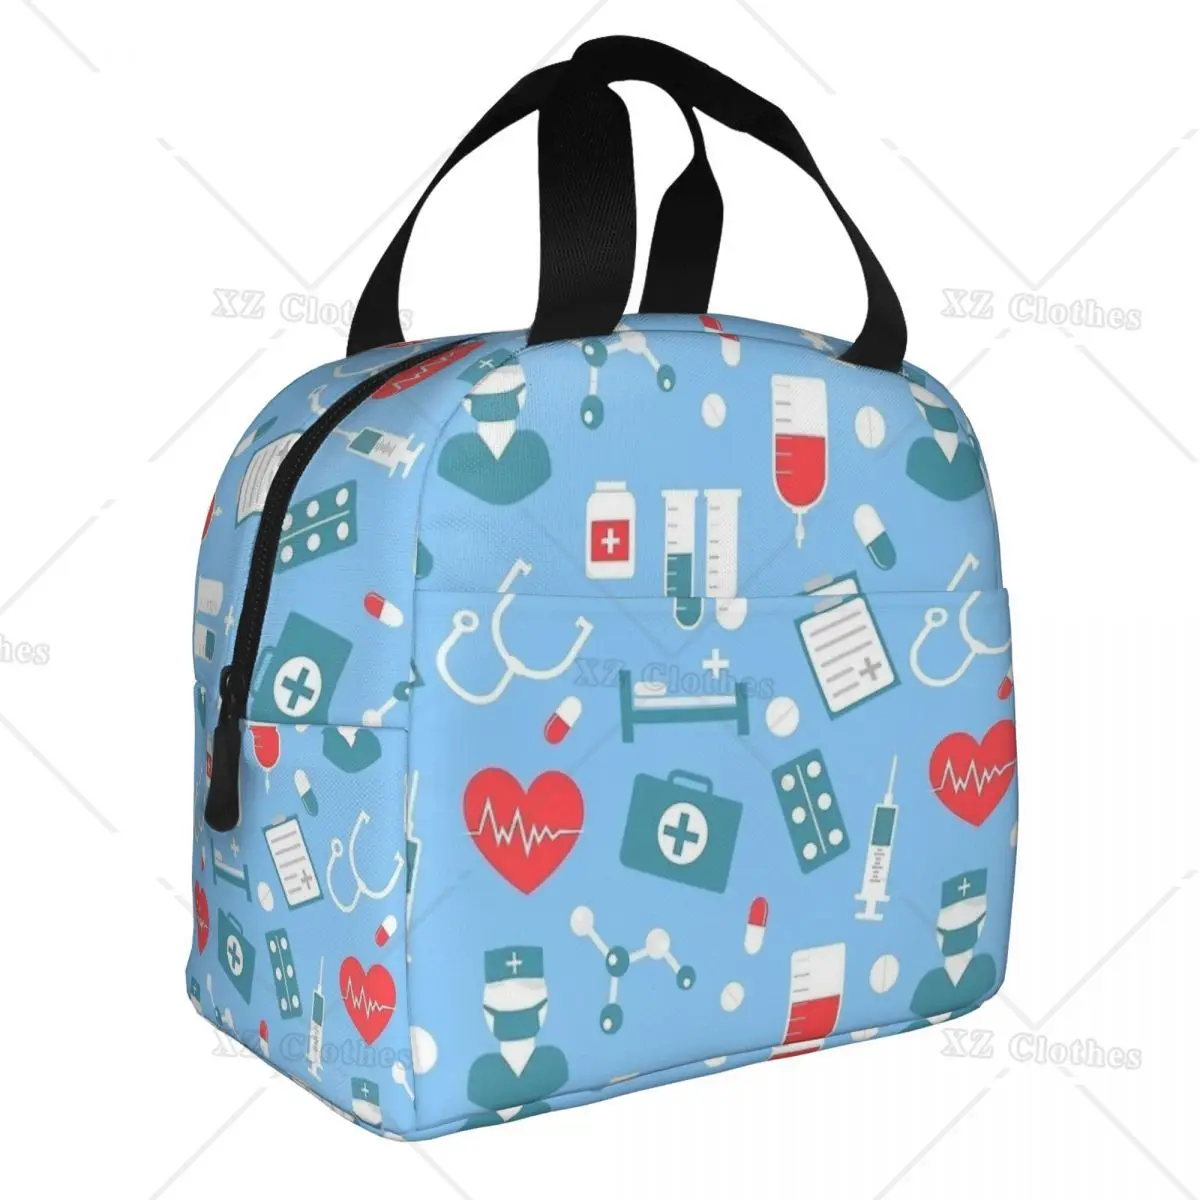 

Изолированная сумка для ланча с милым рисунком медсестры, термоконтейнер, Ланч-бокс, сумки-тоуты с карманом для женщин, мужчин, детей, для работы на открытом воздухе